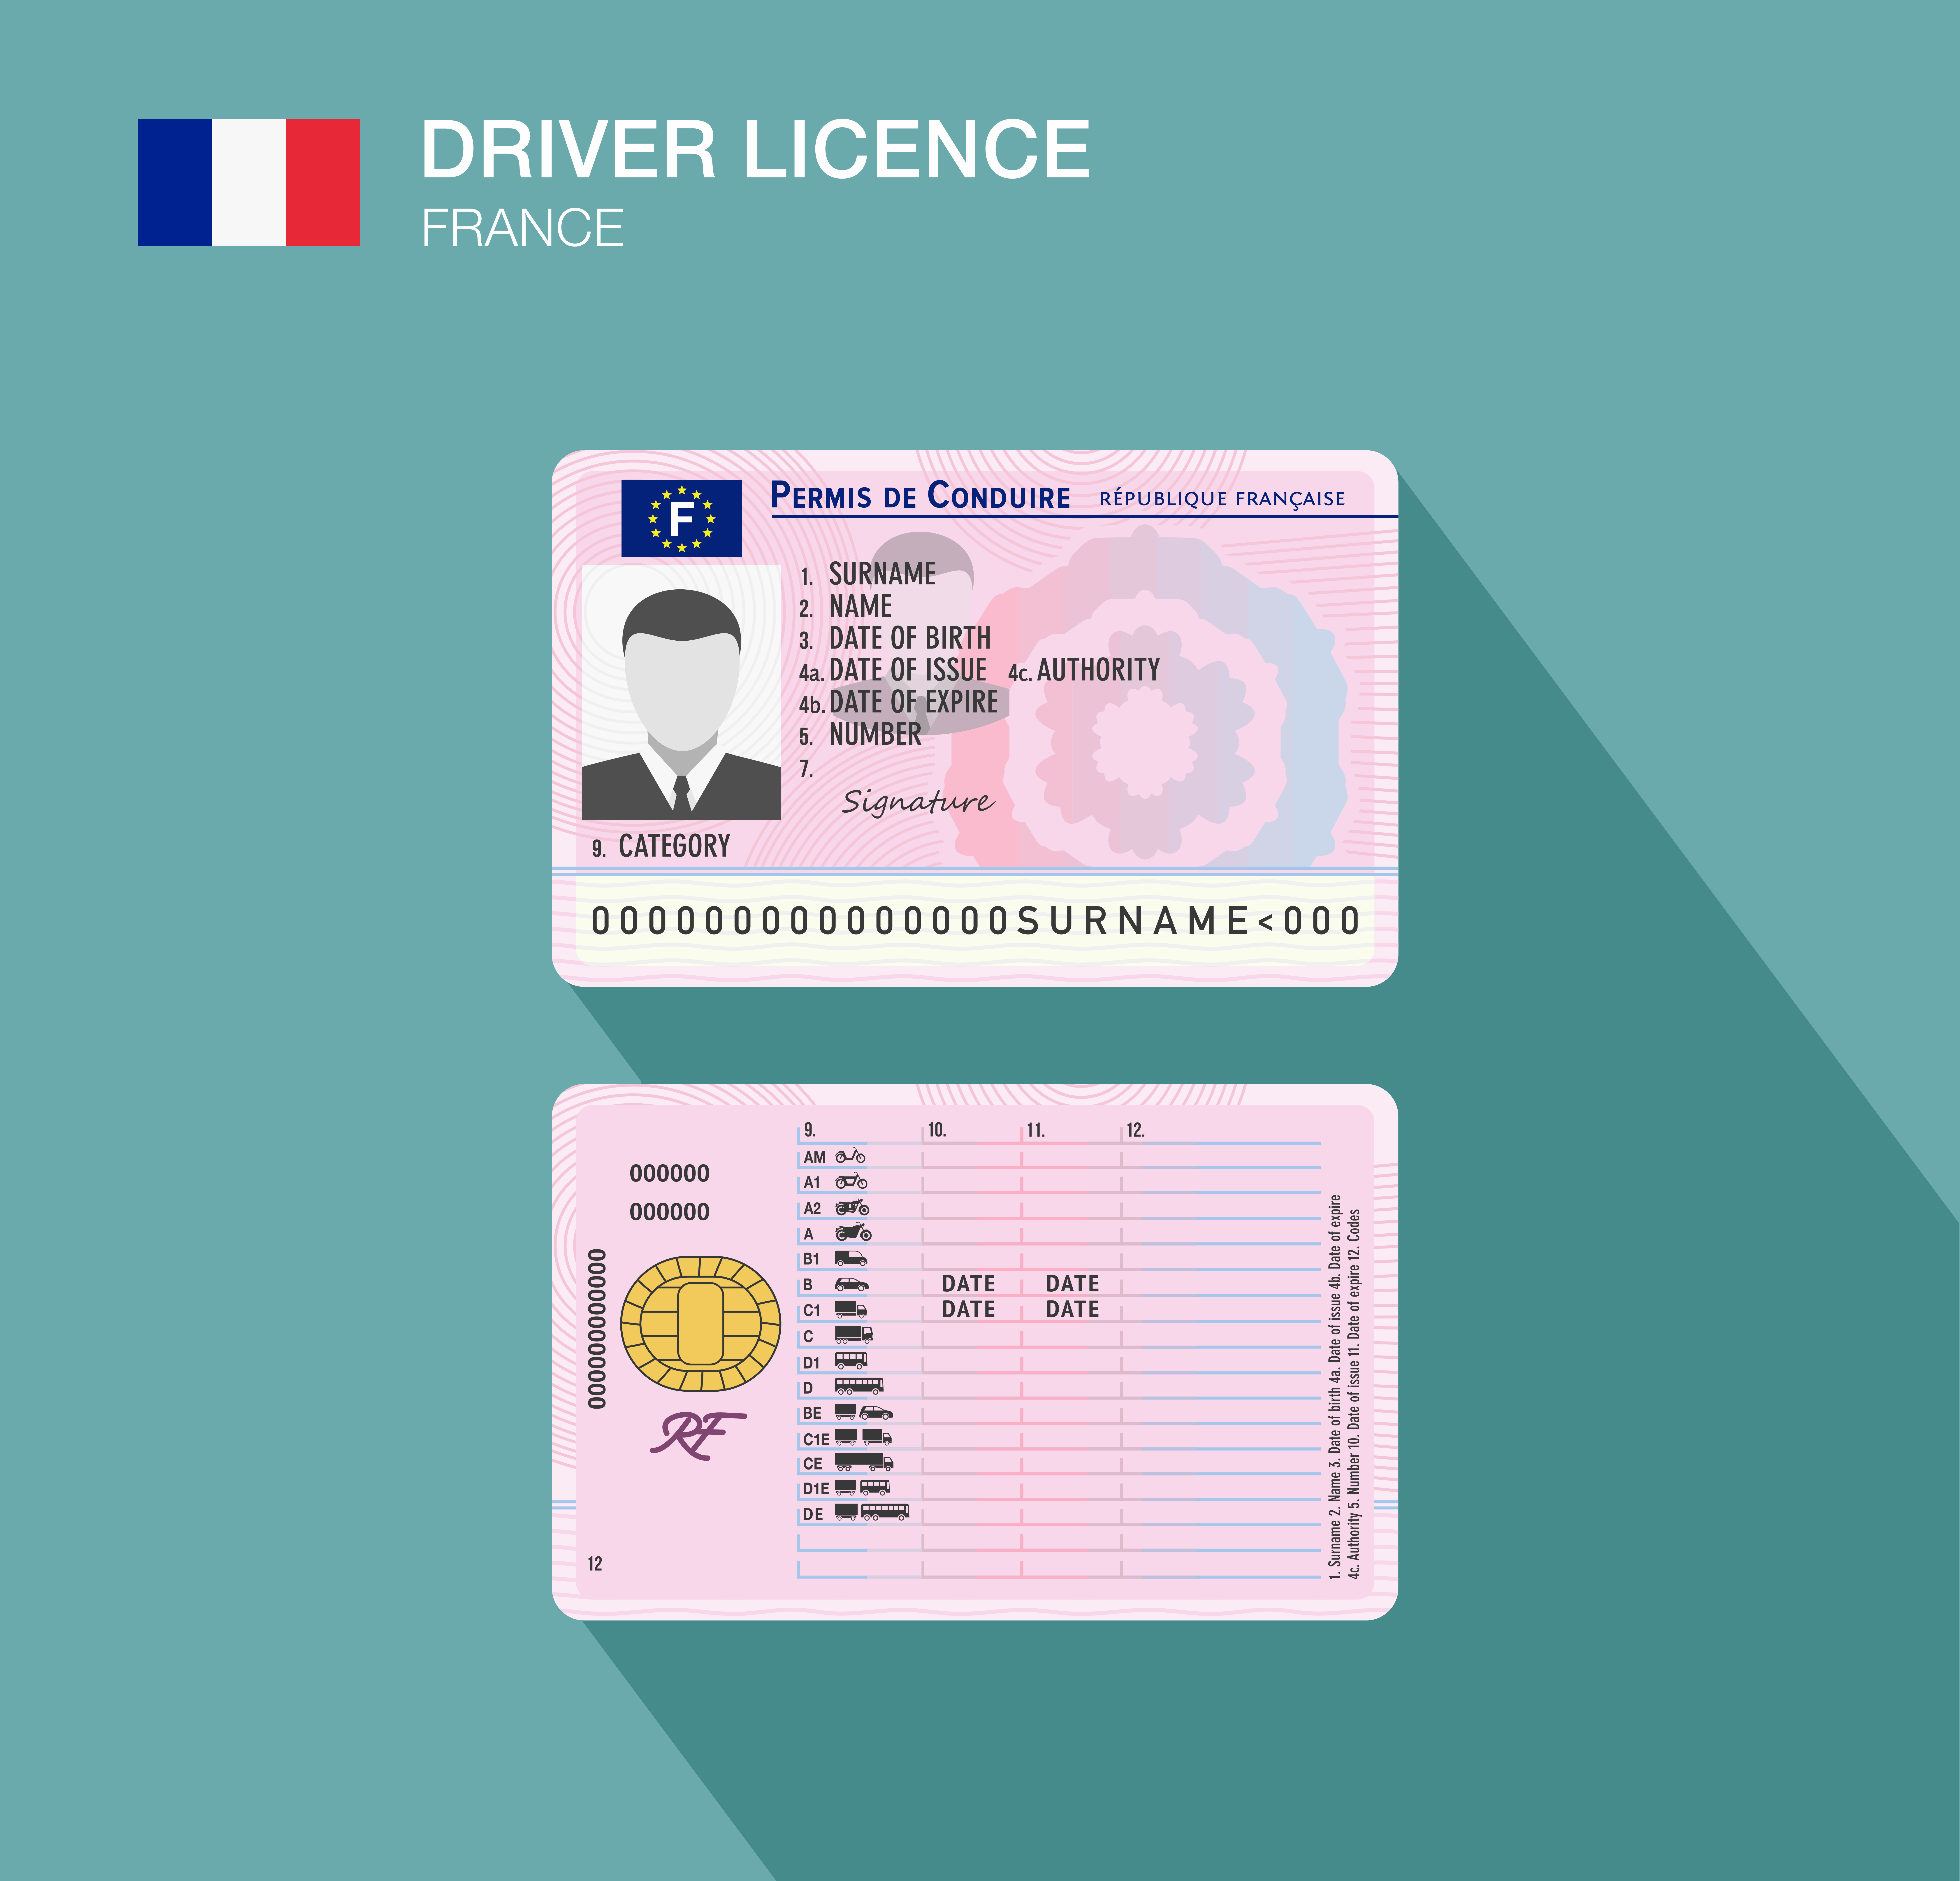 À quoi sert le numéro de permis de conduire ?